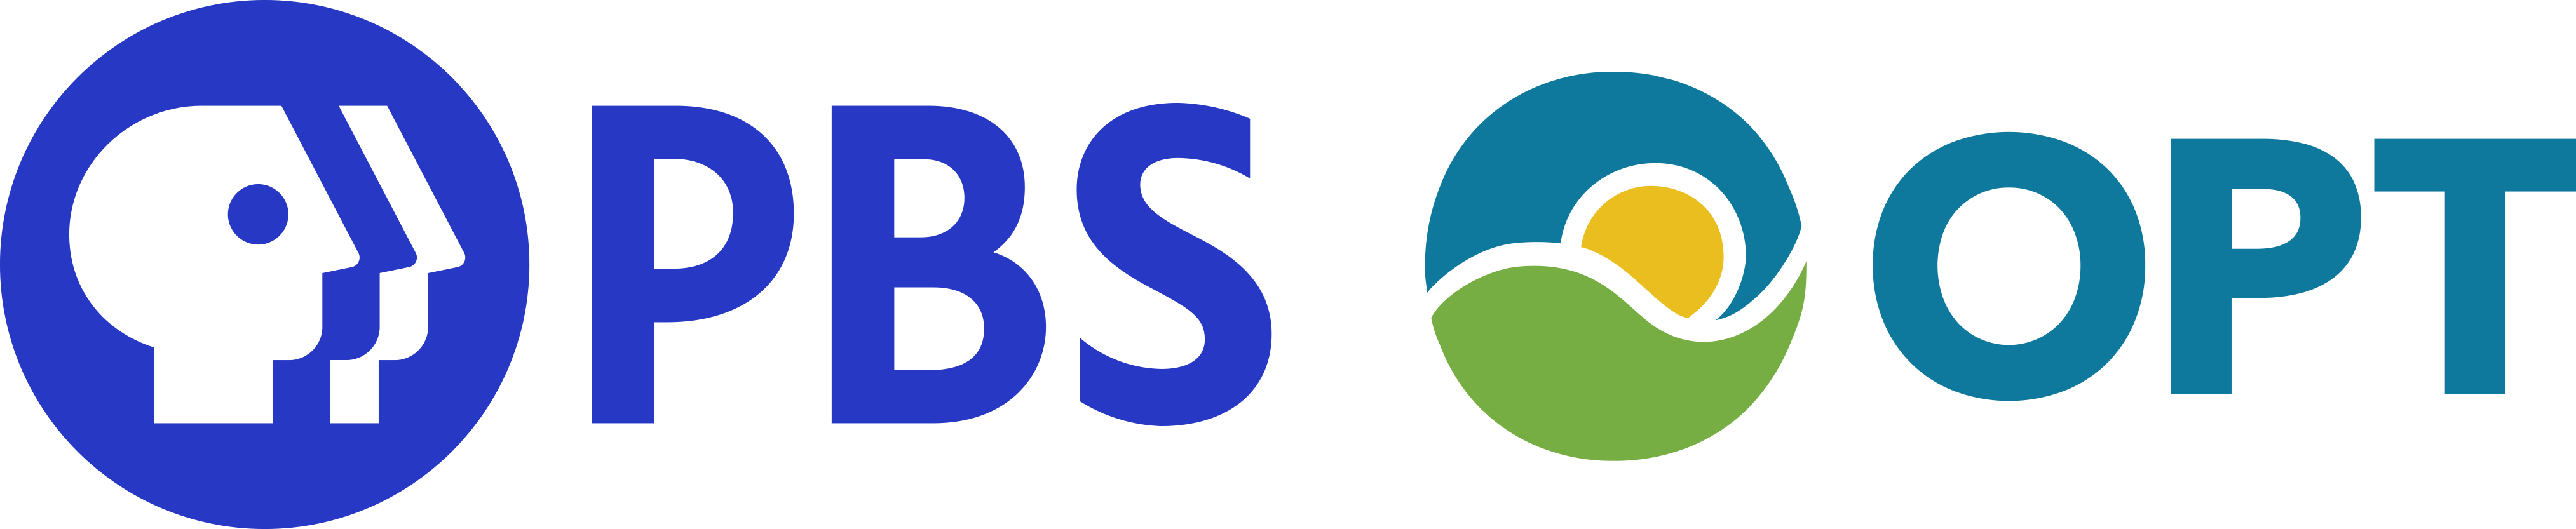 Station header logo